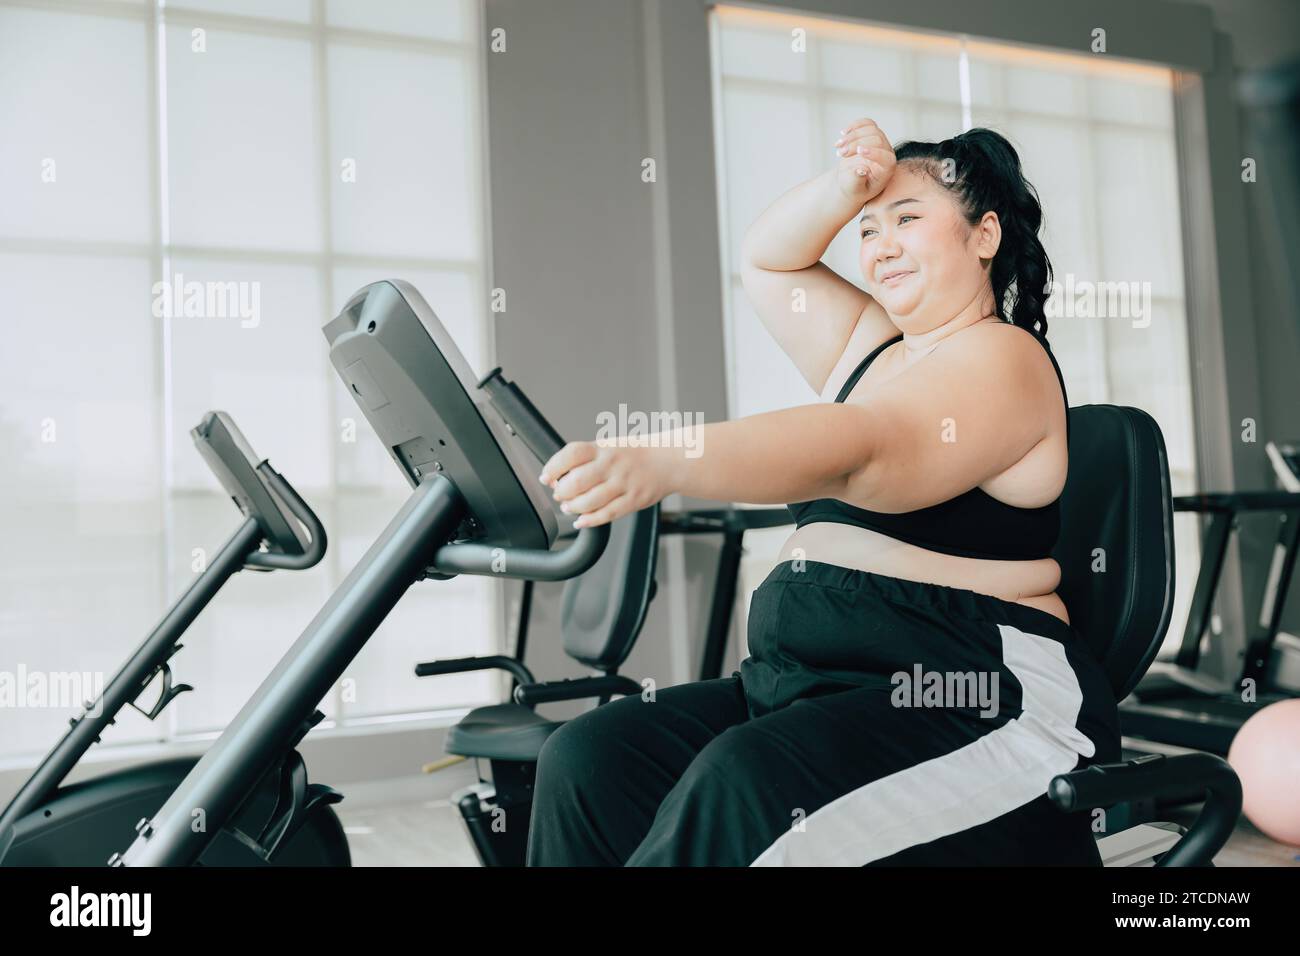 Gesunde fette Frauen asiatische plus Größe Dame tun Workout Übung für Gewicht verlieren Körper Gesundheit in Sport Club Fitness Stockfoto